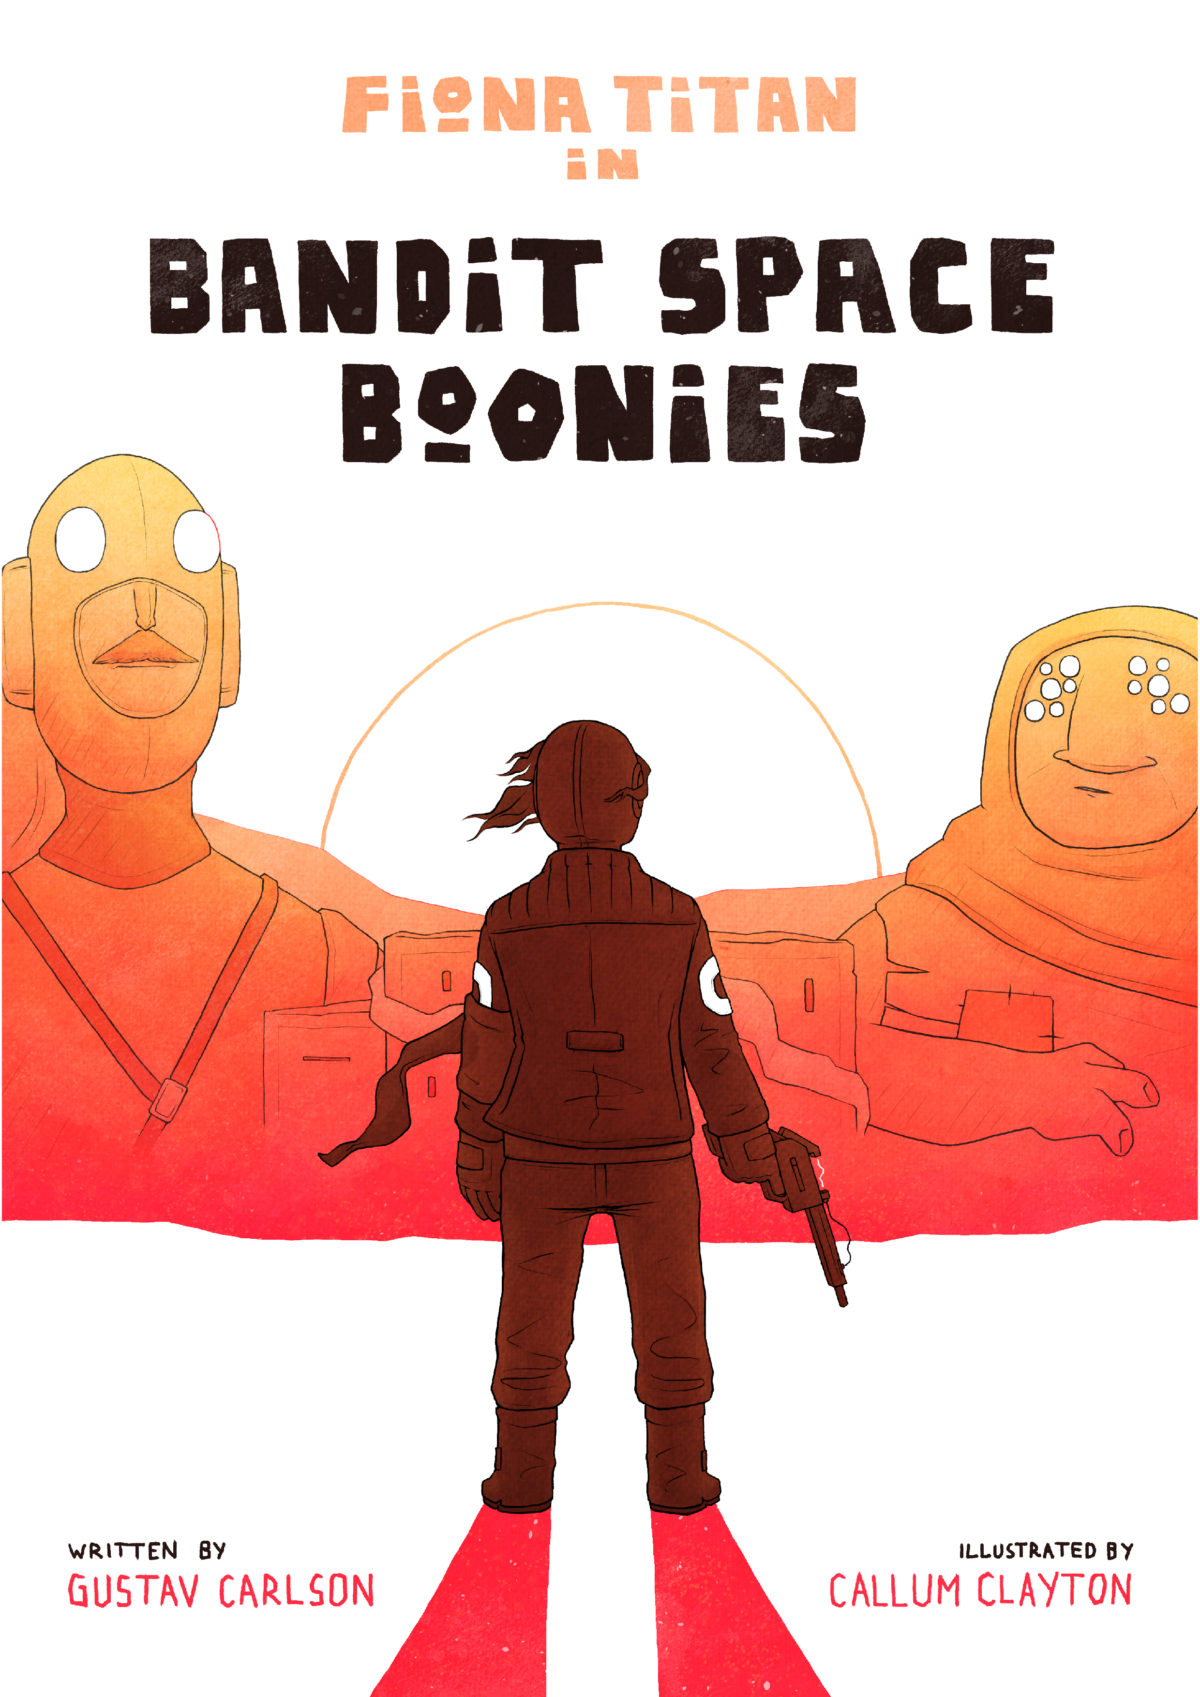 BANDIT SPACE BOONIES